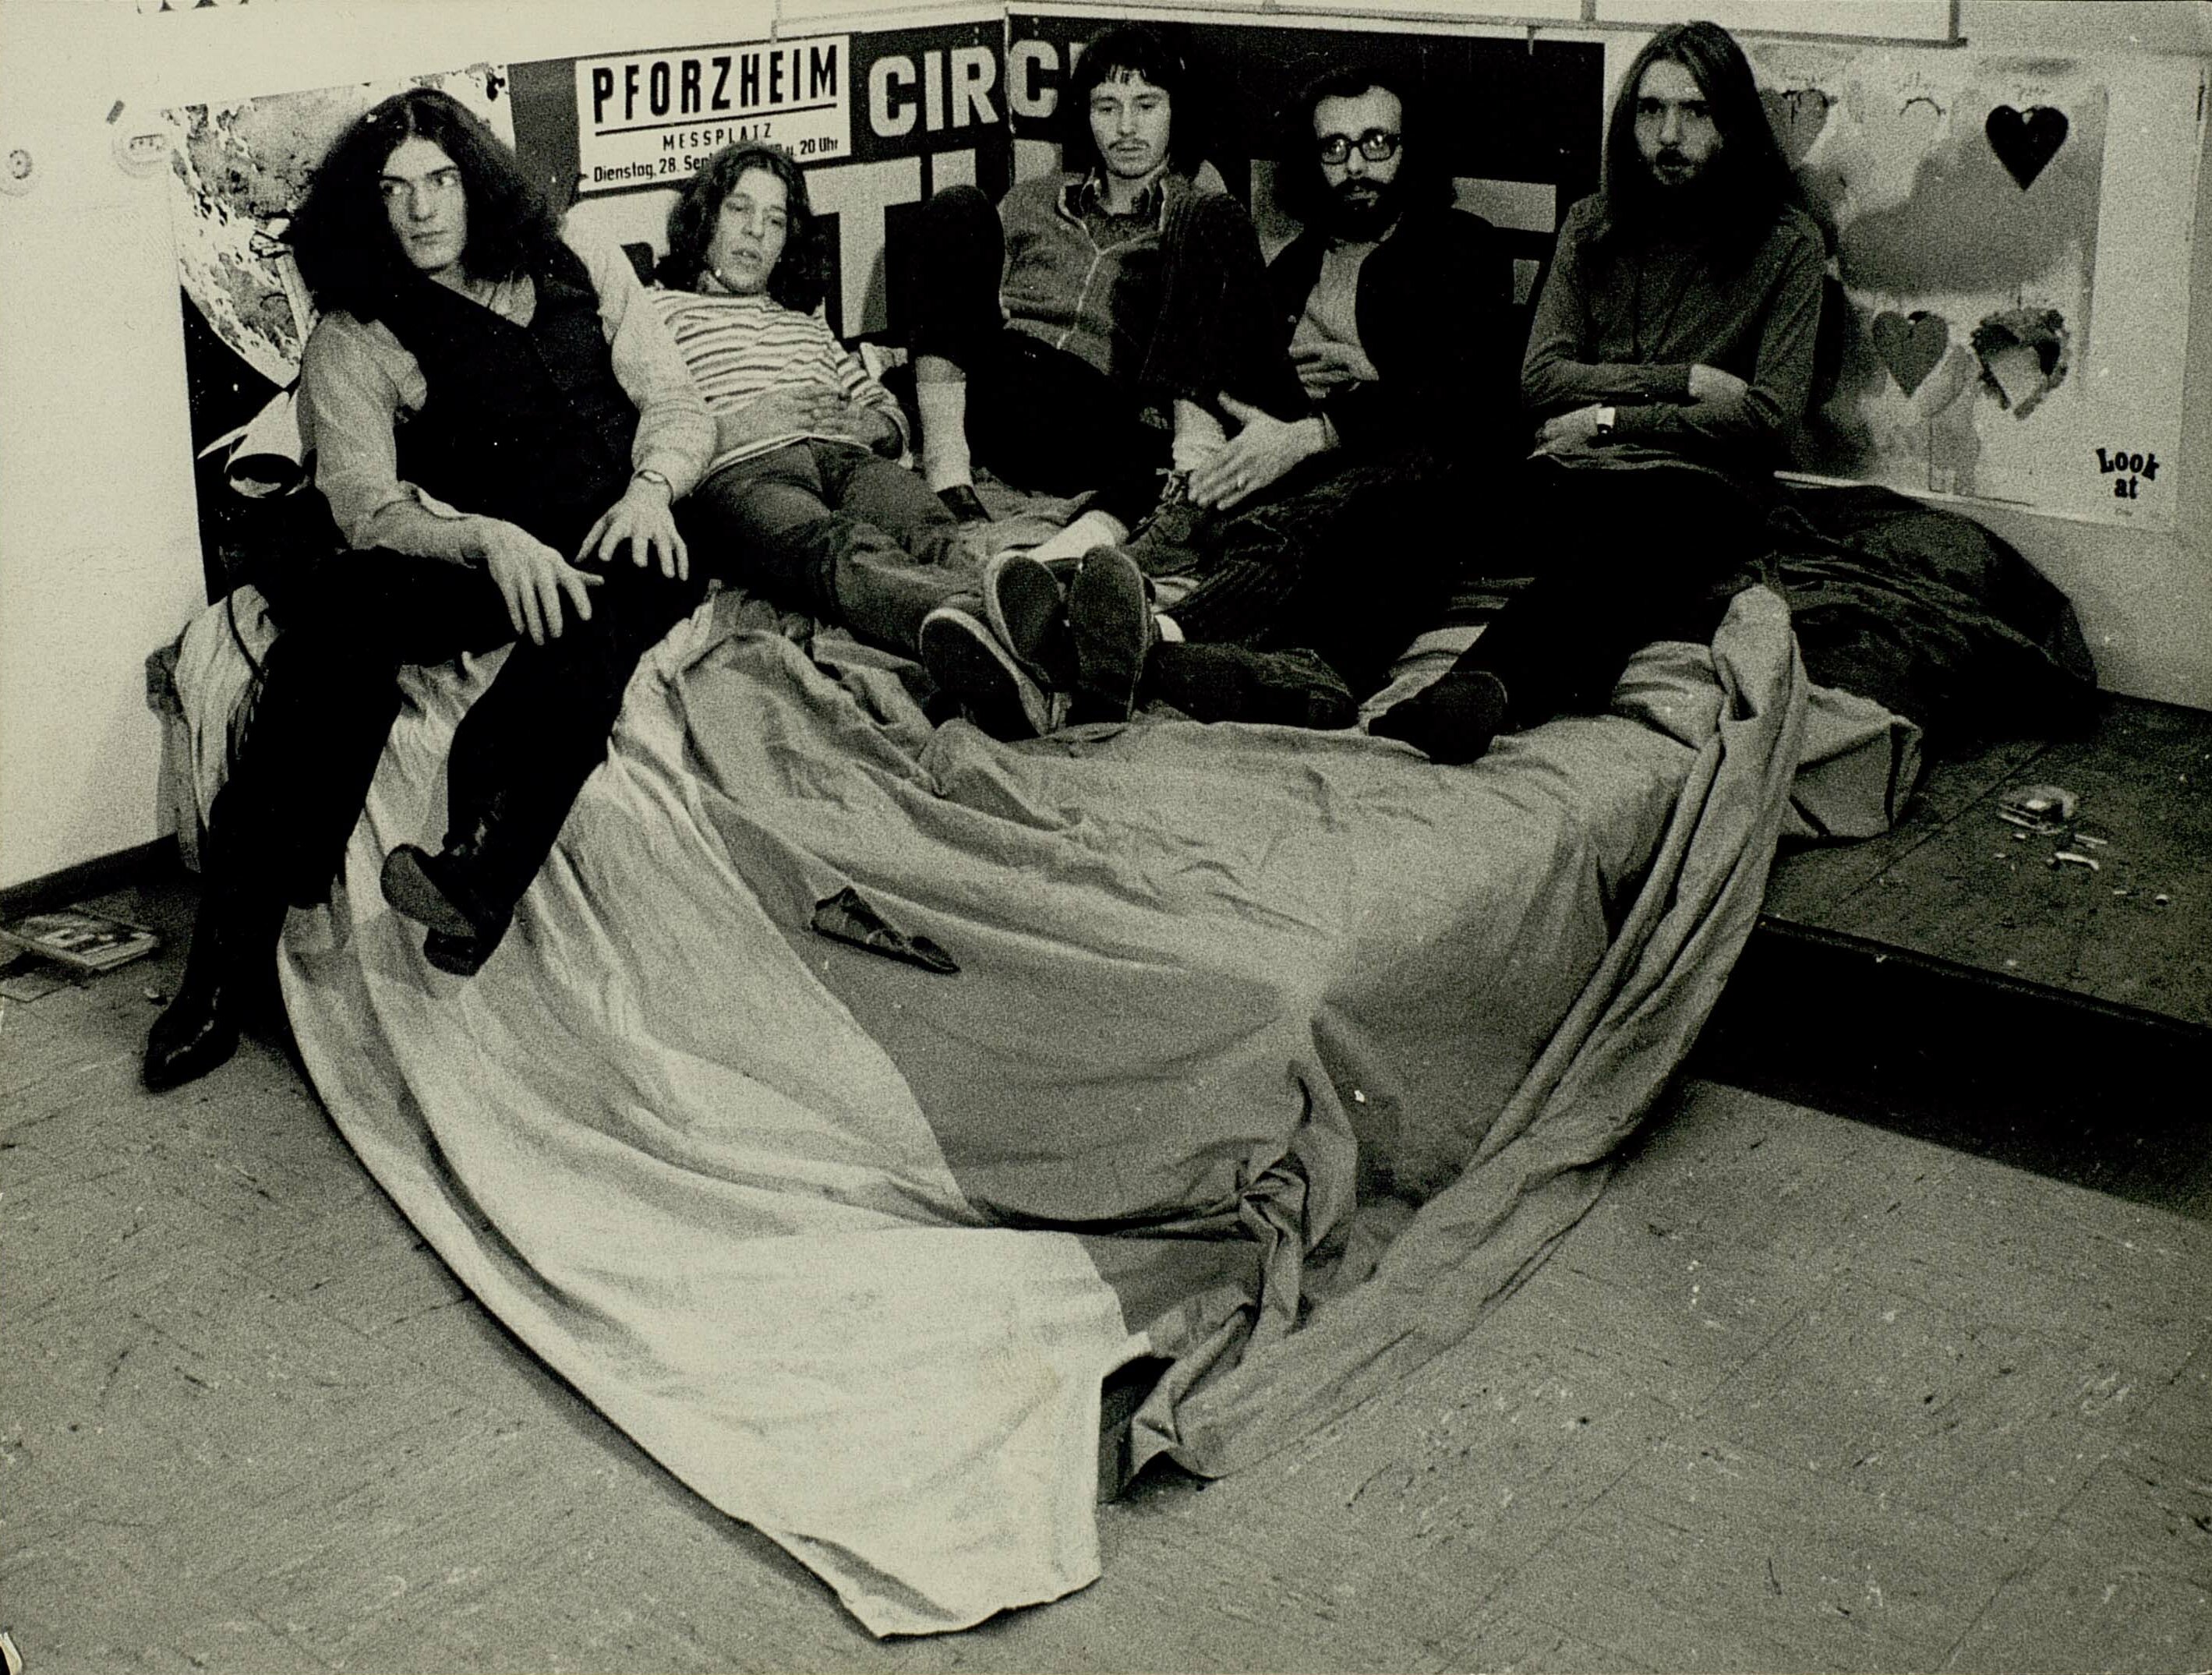 Schwarz-weiß Gruppenfoto der fünf Bandmitglieder von Checkpoint Charlie auf einem Bett.